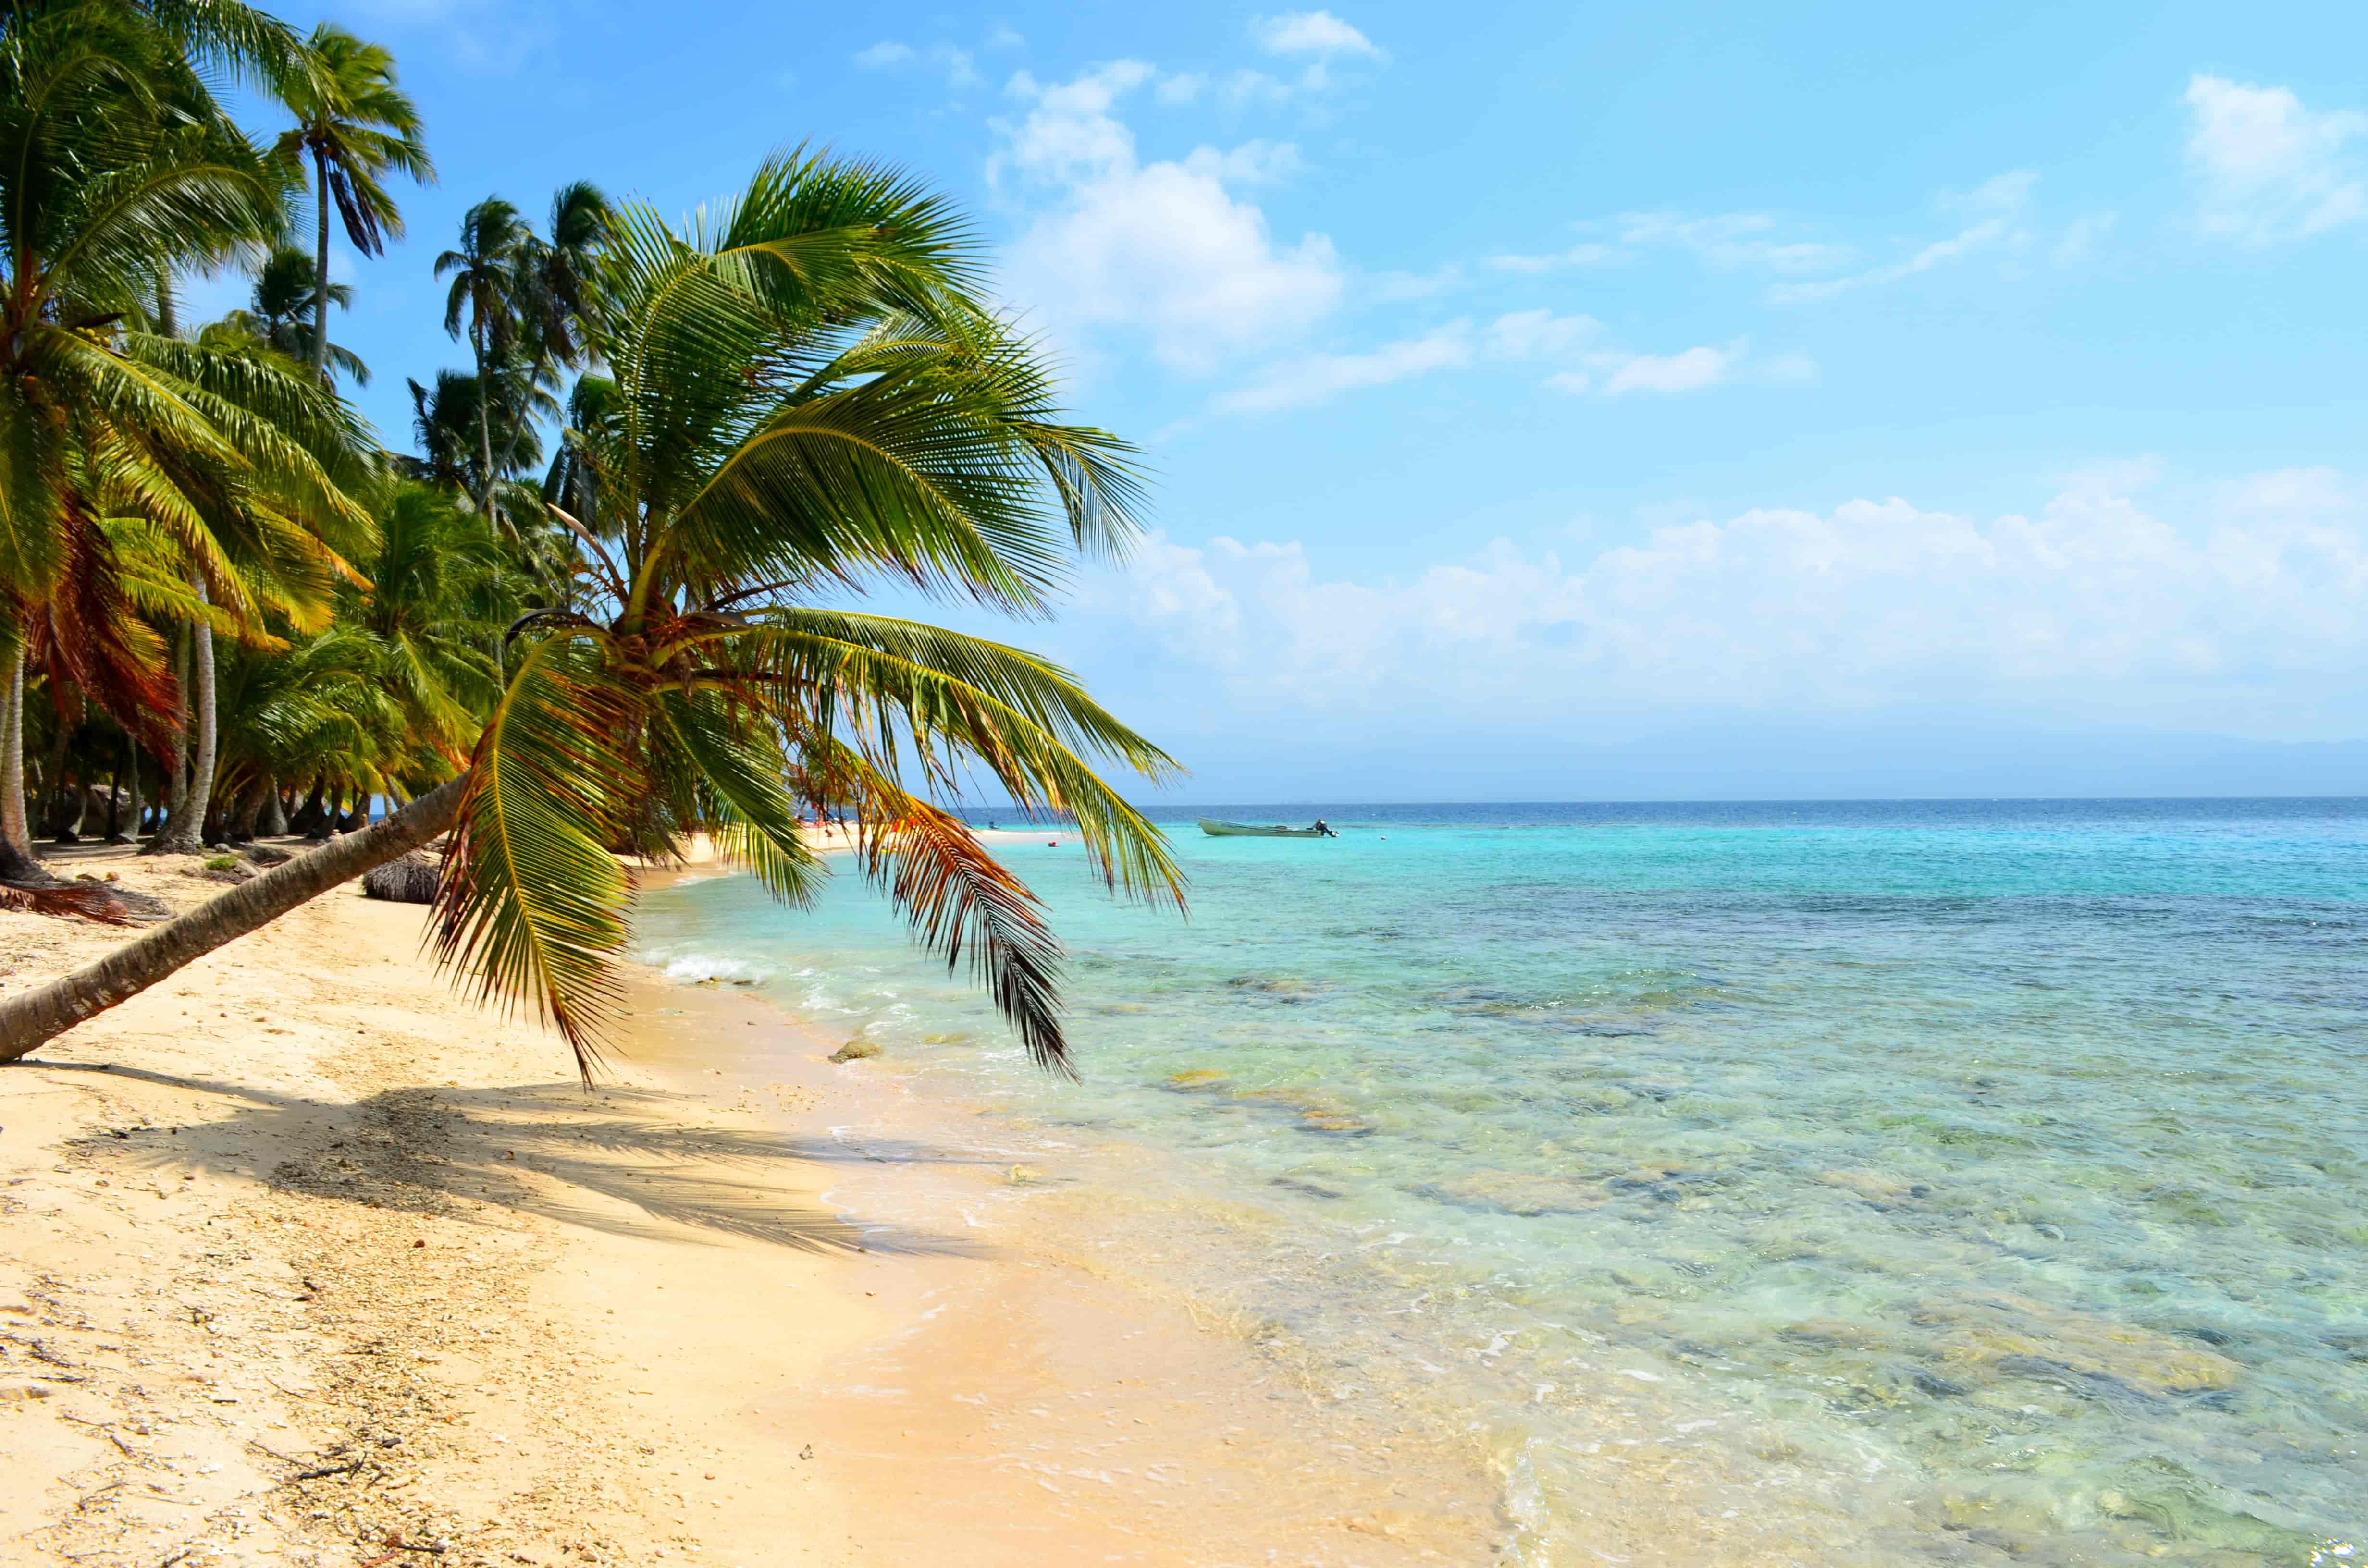 En reise til Cuba og Panamas tropeøyer er en reise til Paradis